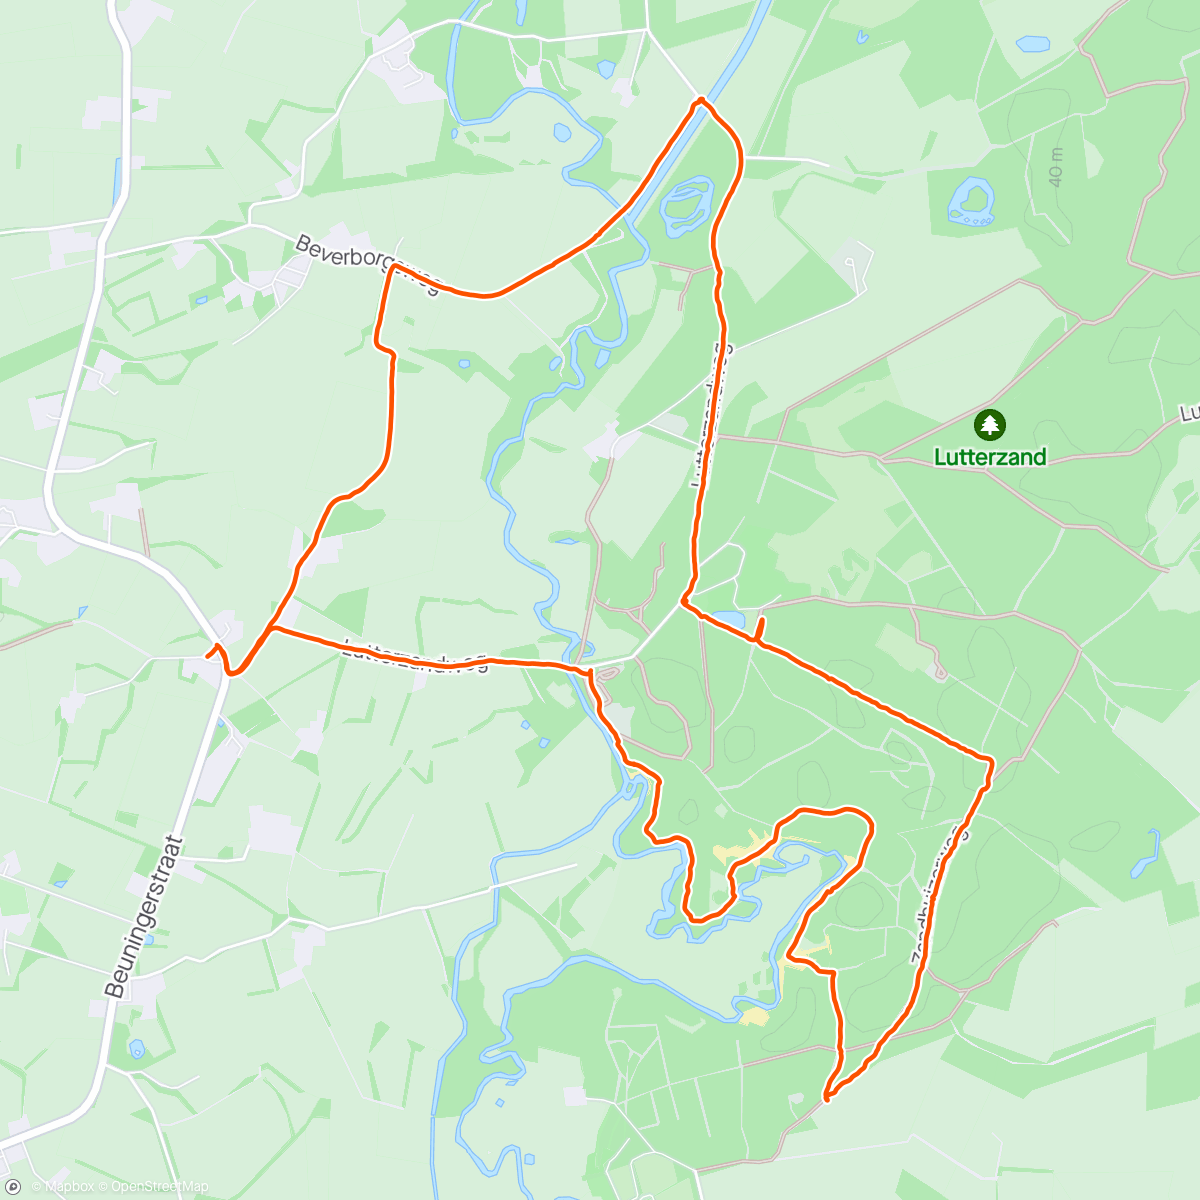 Map of the activity, Kronkelen langs de Dinkel